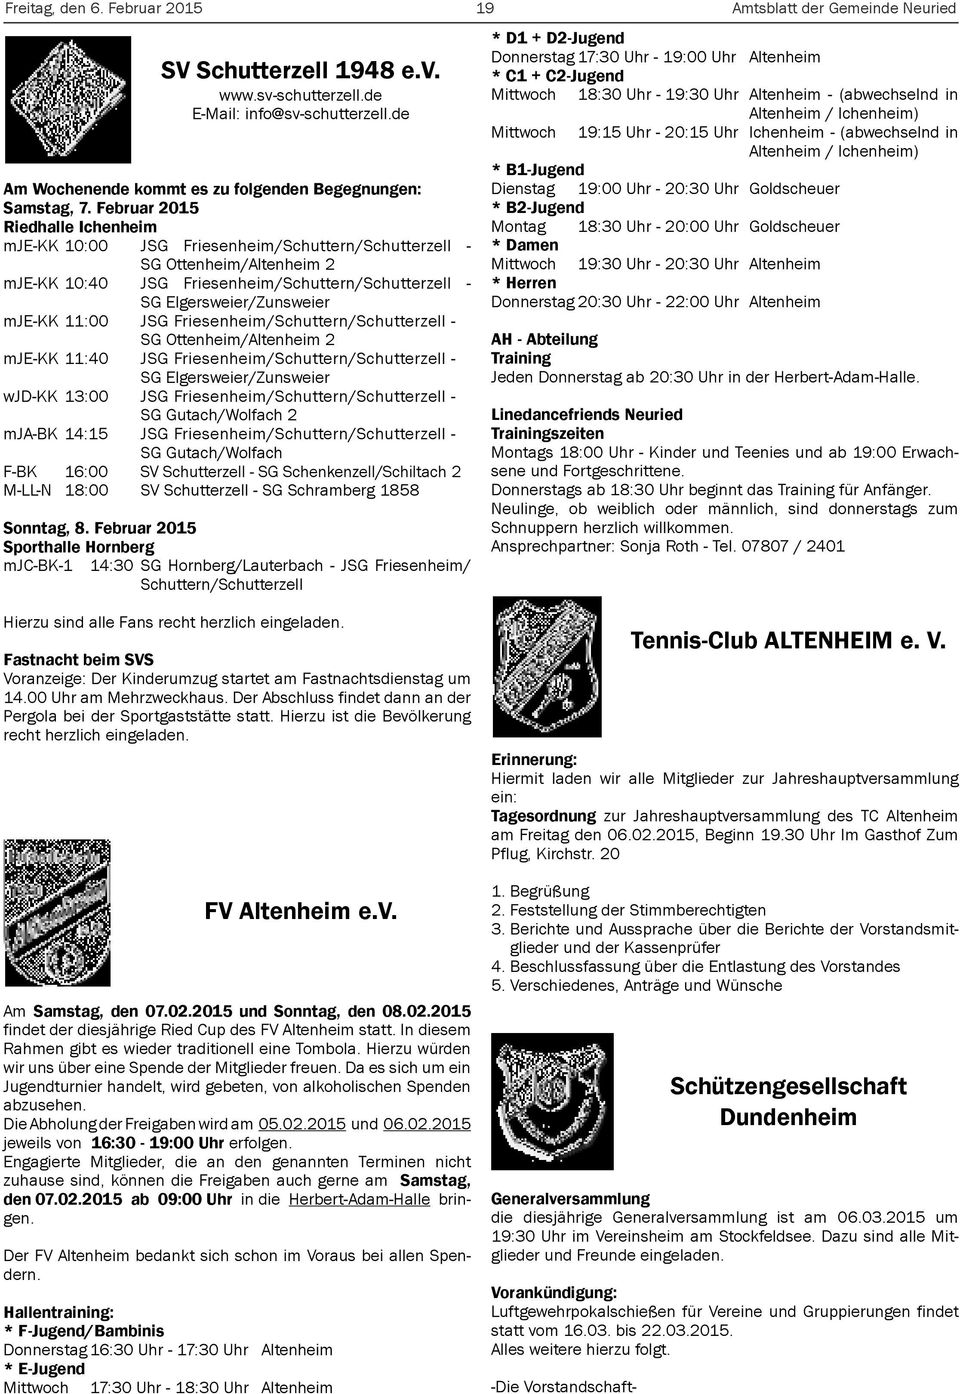 11:00 JSG Friesenheim/Schuttern/Schutterzell - SG Ottenheim/Altenheim 2 mje-kk 11:40 JSG Friesenheim/Schuttern/Schutterzell - SG Elgersweier/Zunsweier wjd-kk 13:00 JSG